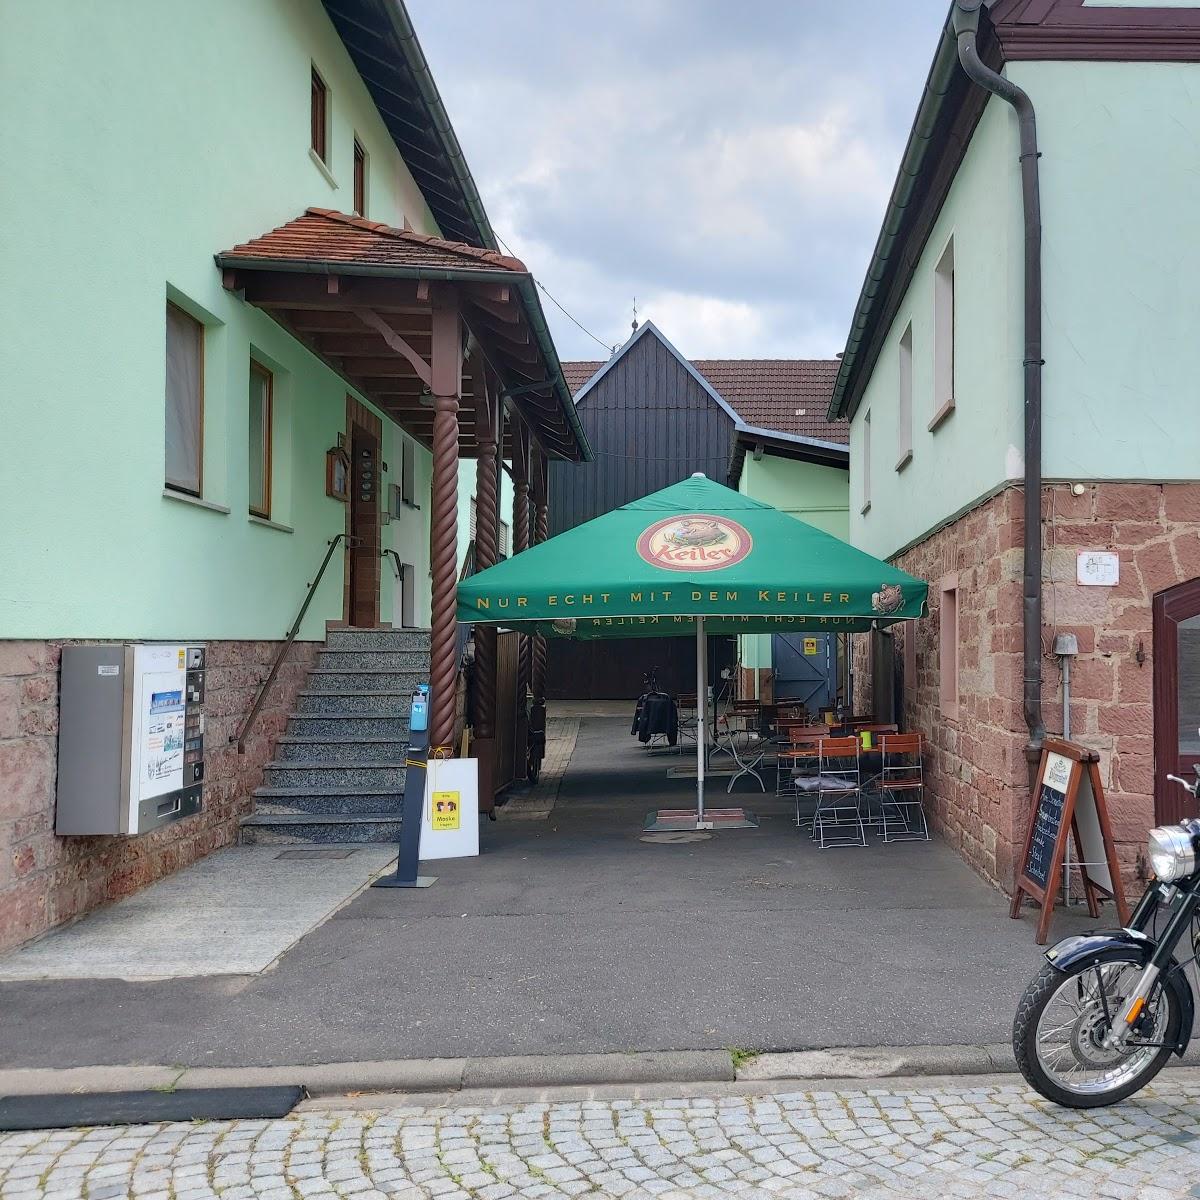 Restaurant "Gasthaus Hahn" in Gemünden am Main